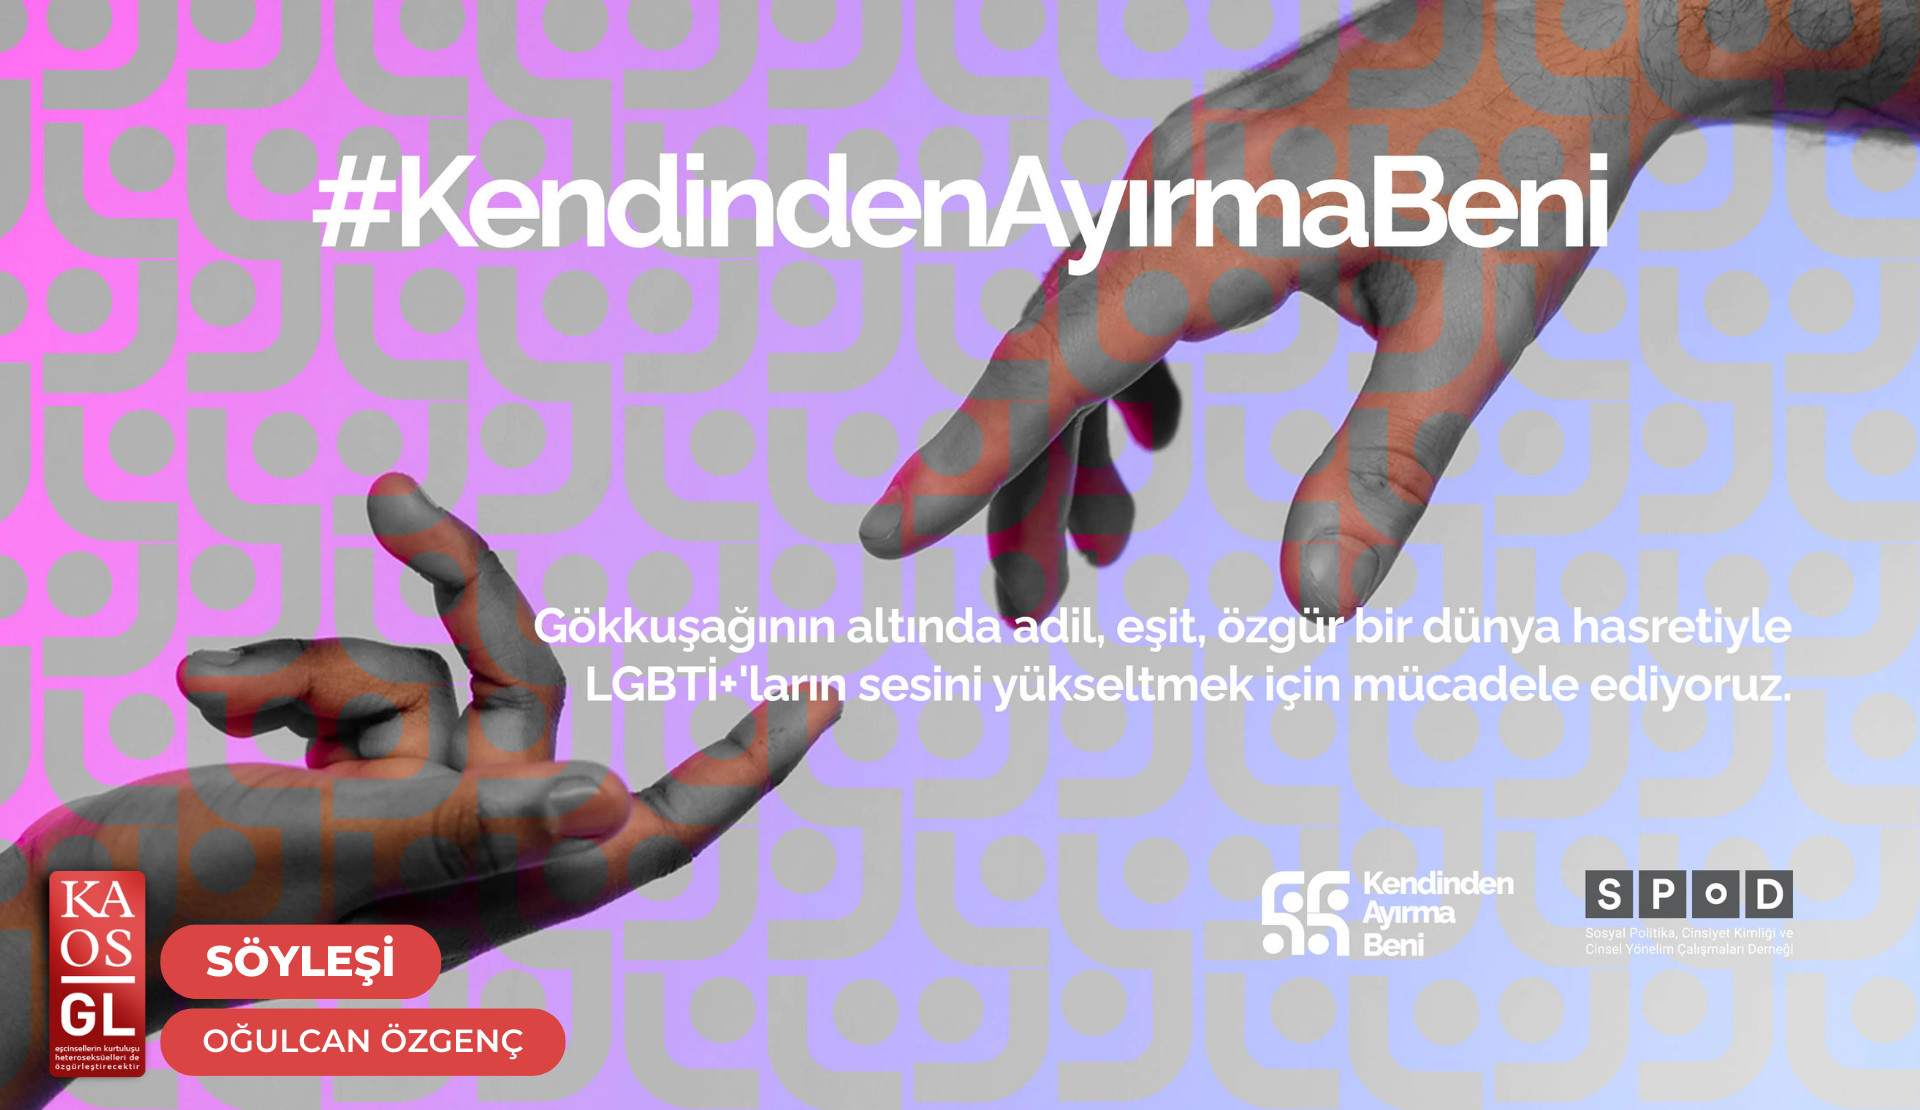 “SPoD’un kurulduğu günden bu yana LGBTİ+’ların hayatlarına nasıl dokunduğunu anlatacağız” | Kaos GL - LGBTİ+ Haber Portalı